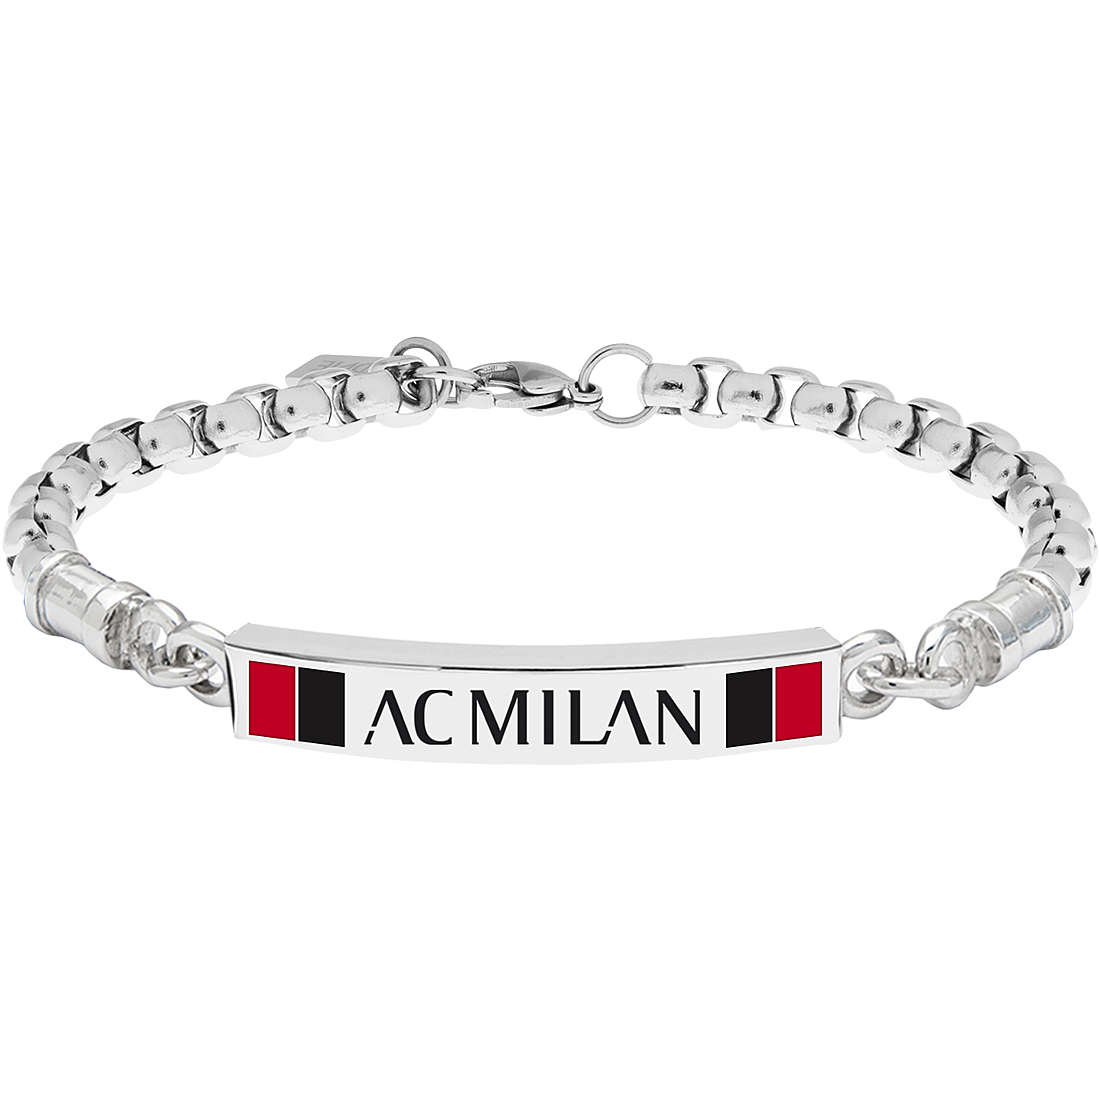 bracelet man jewellery Milan Gioielli Squadre B-MB002UAR